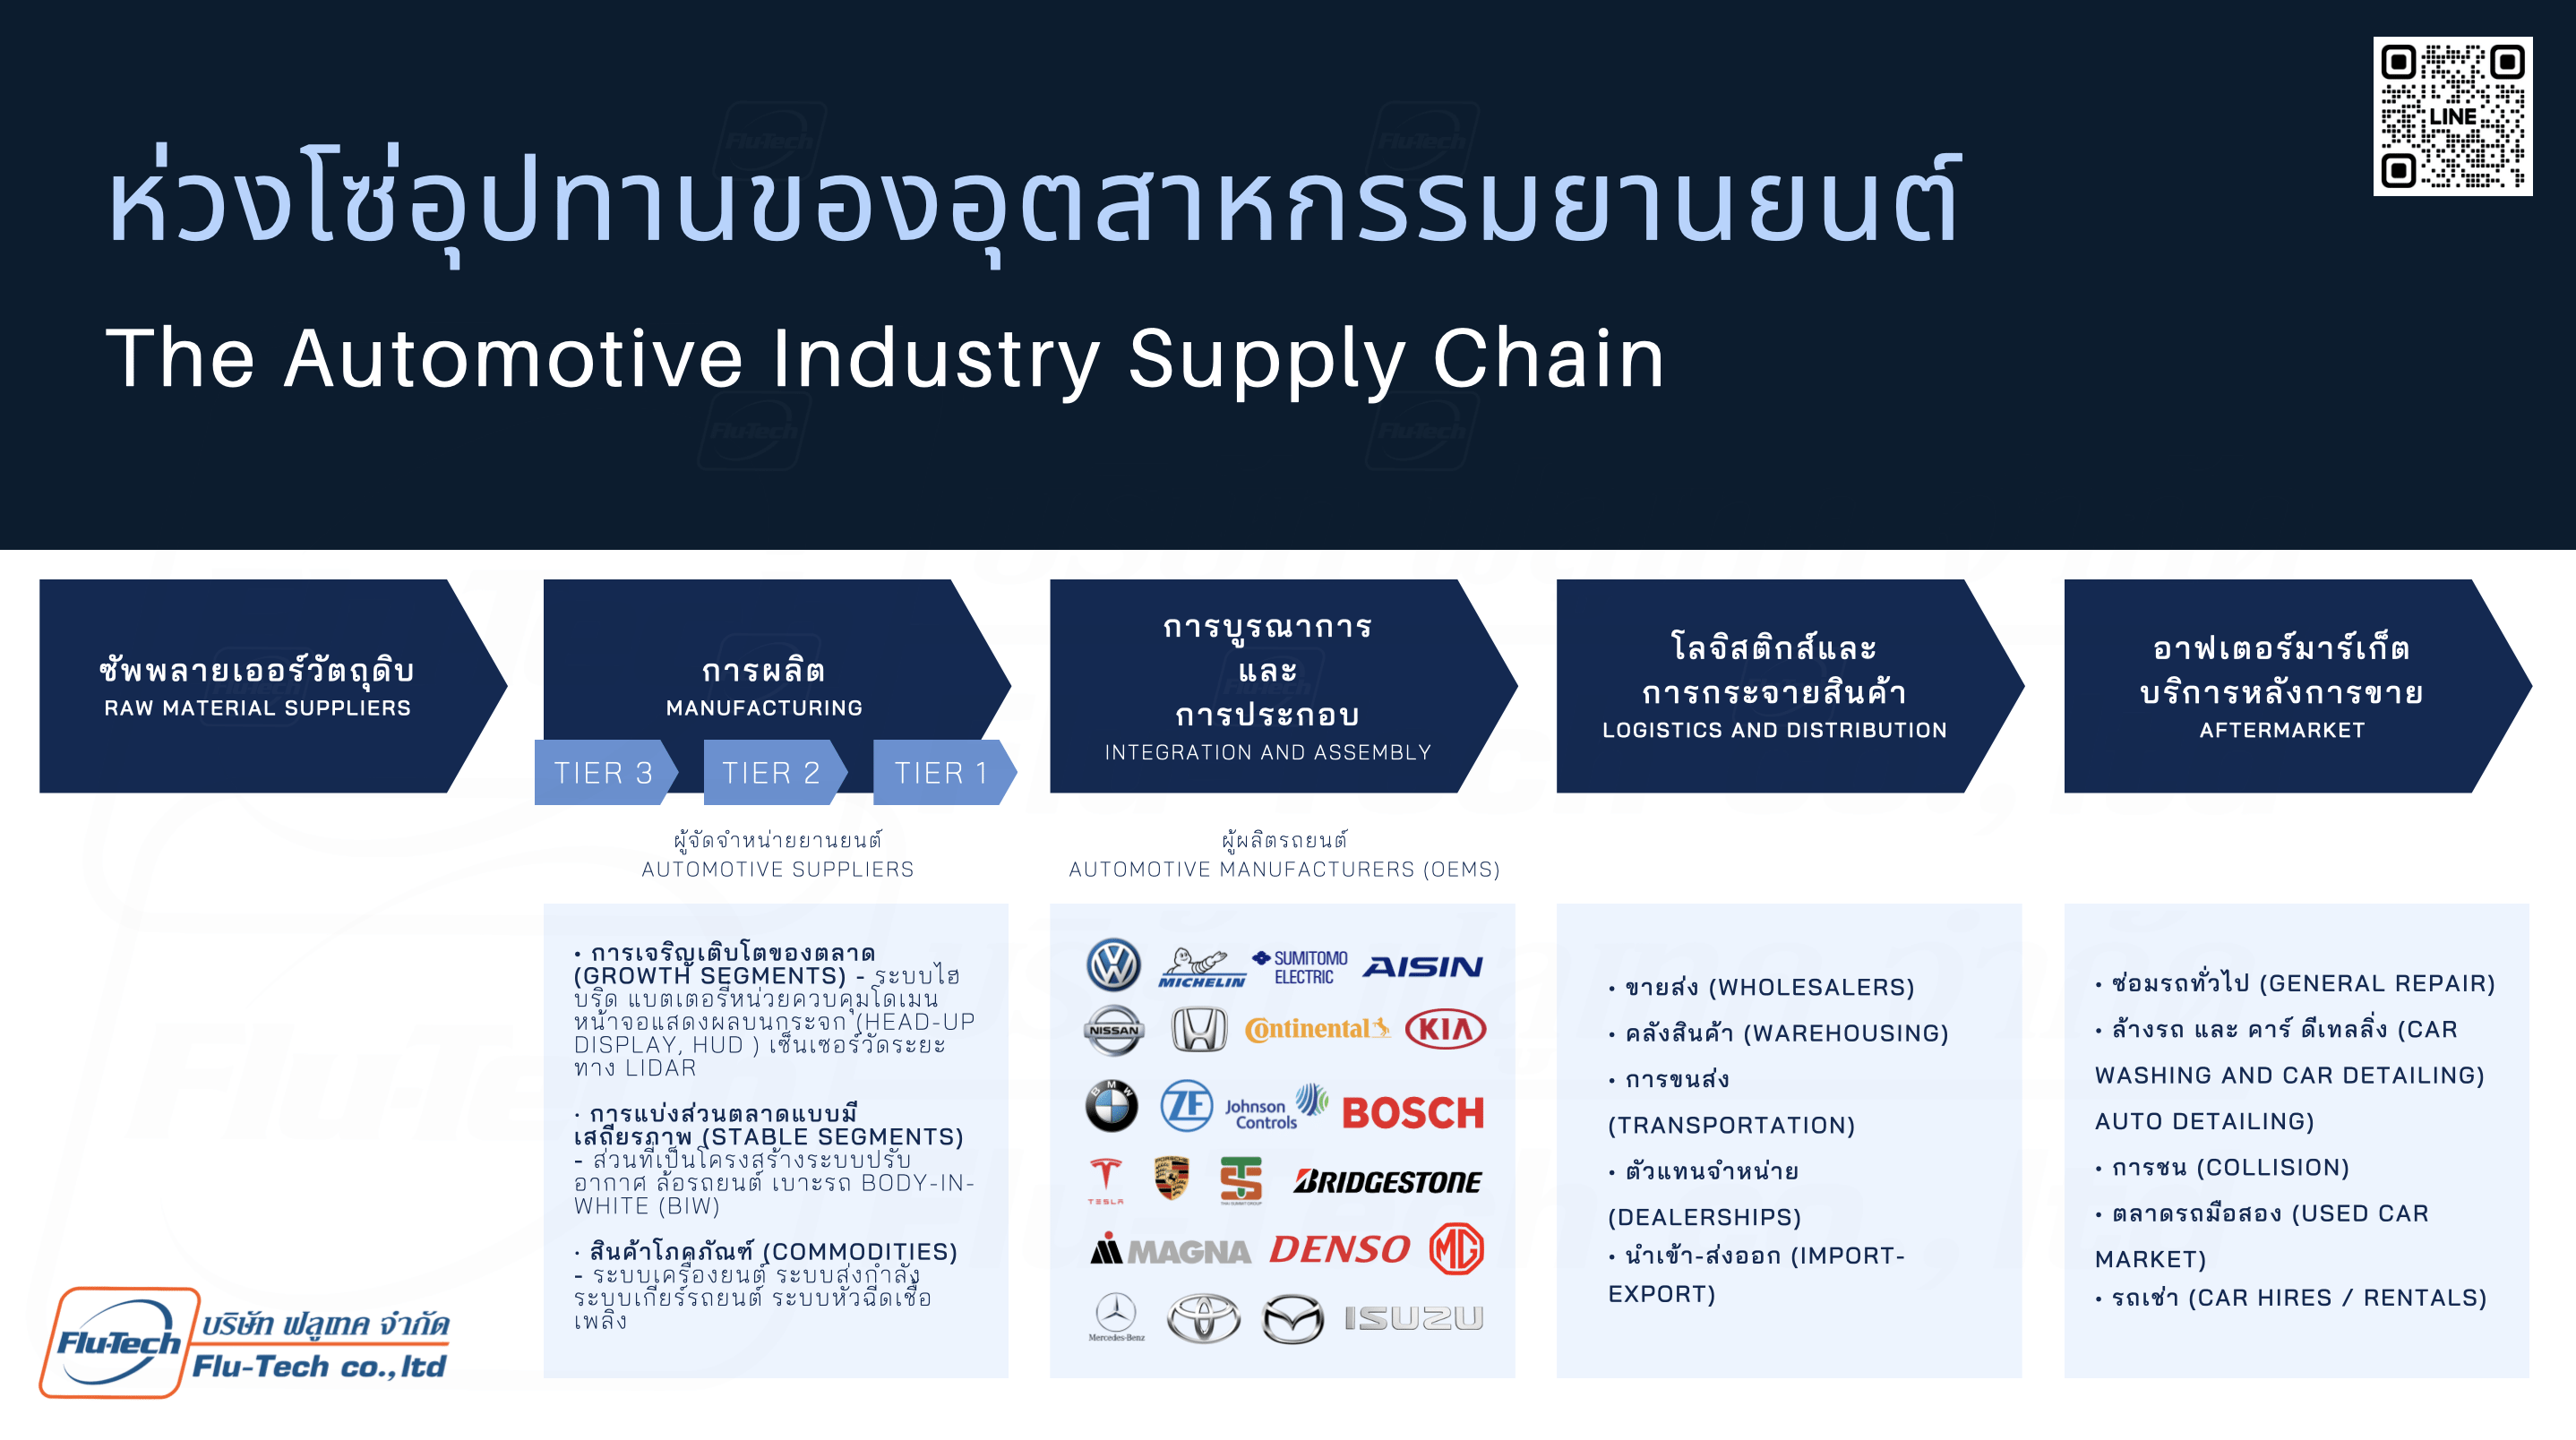 ห่วงโซ่อุปทานของอุตสาหกรรมยานยนต์ - What is the Supply Chain of the Automotive Industry? - Flutech Co., Ltd. - บริษัท ฟลูเทค จํากัด - Flu-Tech Thailand